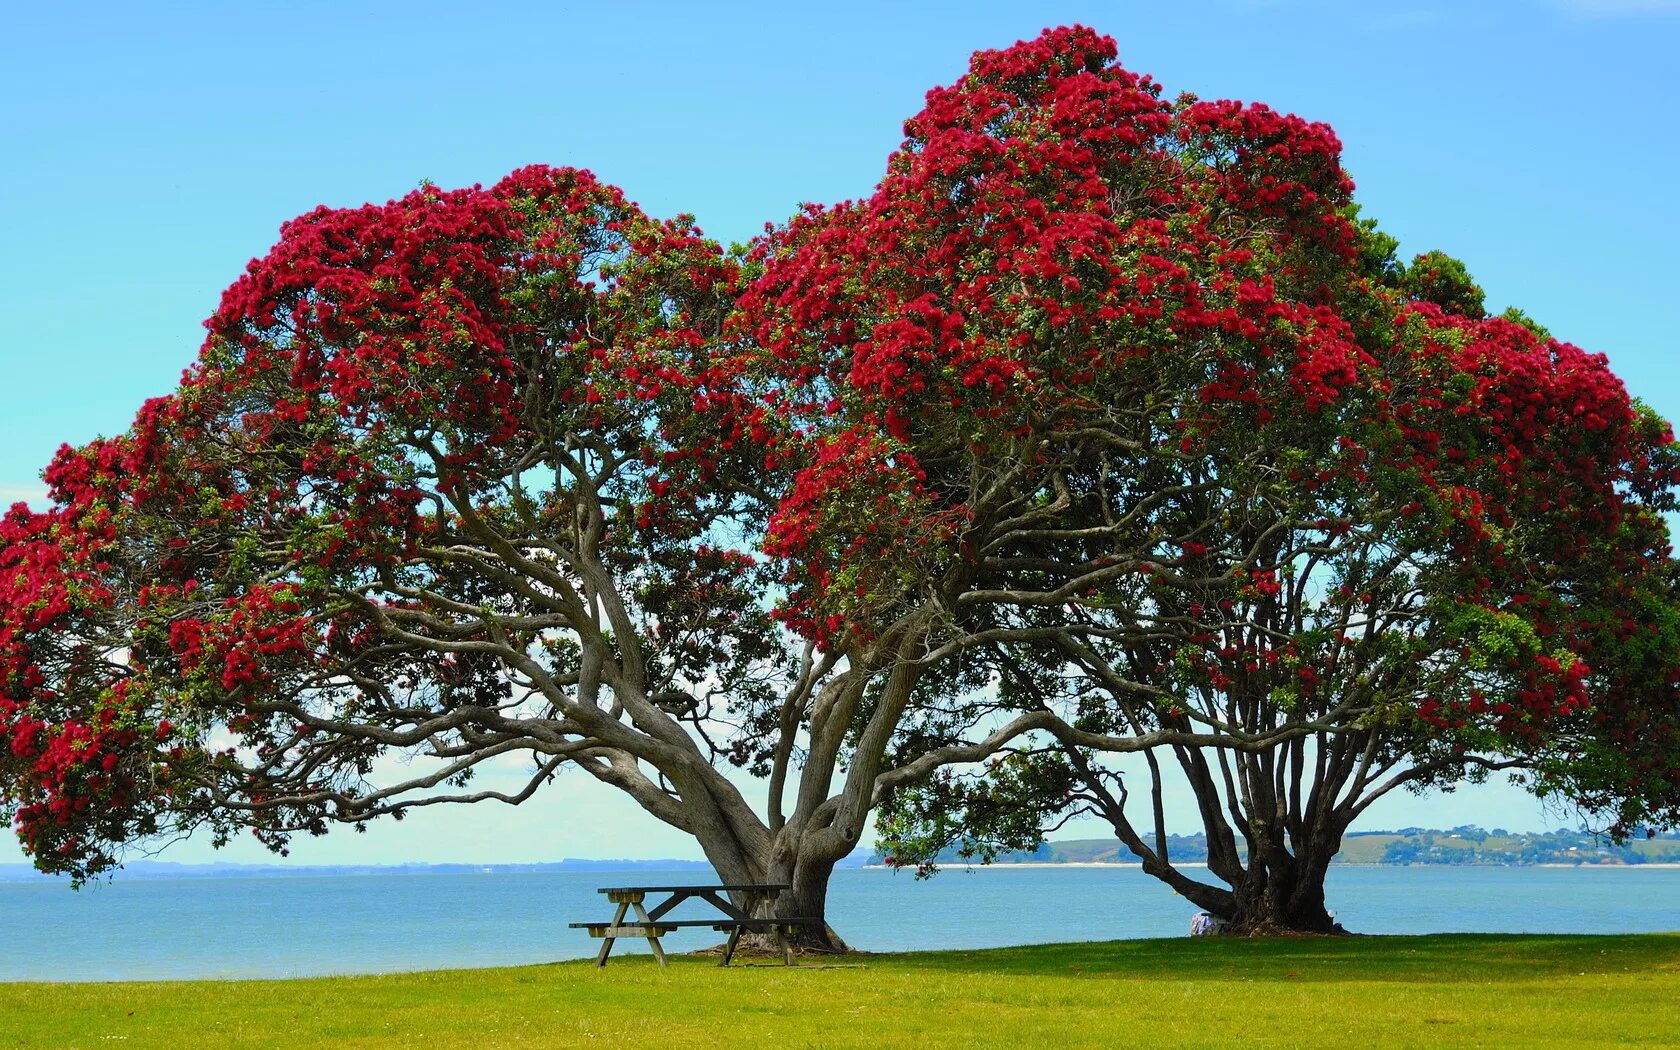 My new tree. Метросидерос зонтичный. Новая Зеландия цветы Похутукава. Метросидерос холмовой. Дерево в новой Зеландии Похутукава.